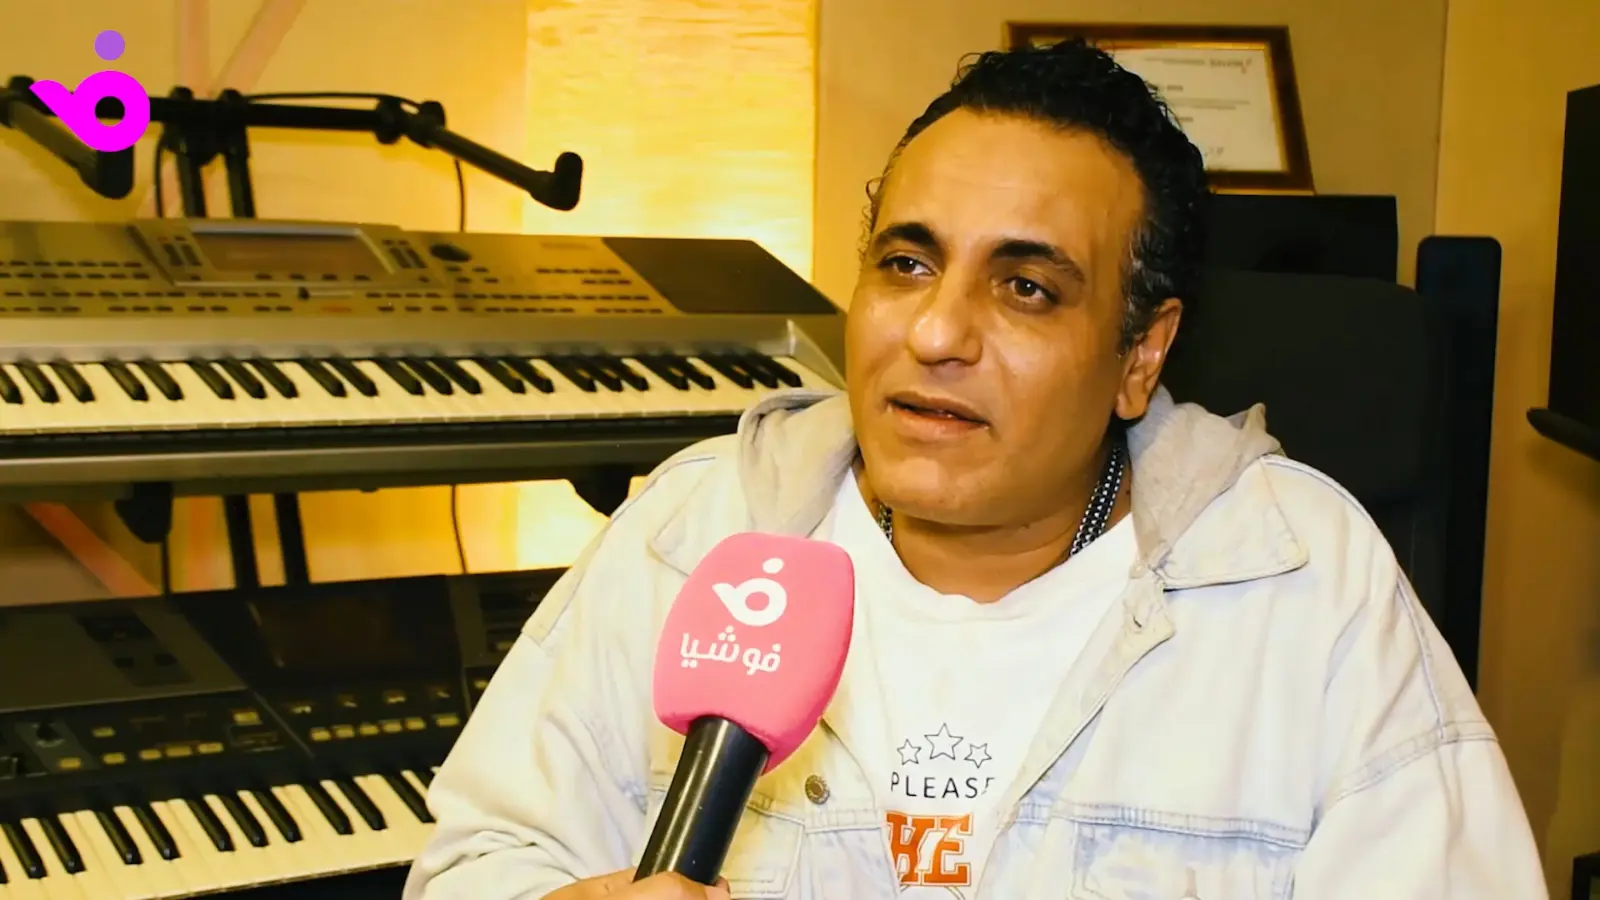 محمد رحيم يتحدث عن دخوله قائمة أفضل 50 أغنية عربية في القرن 21